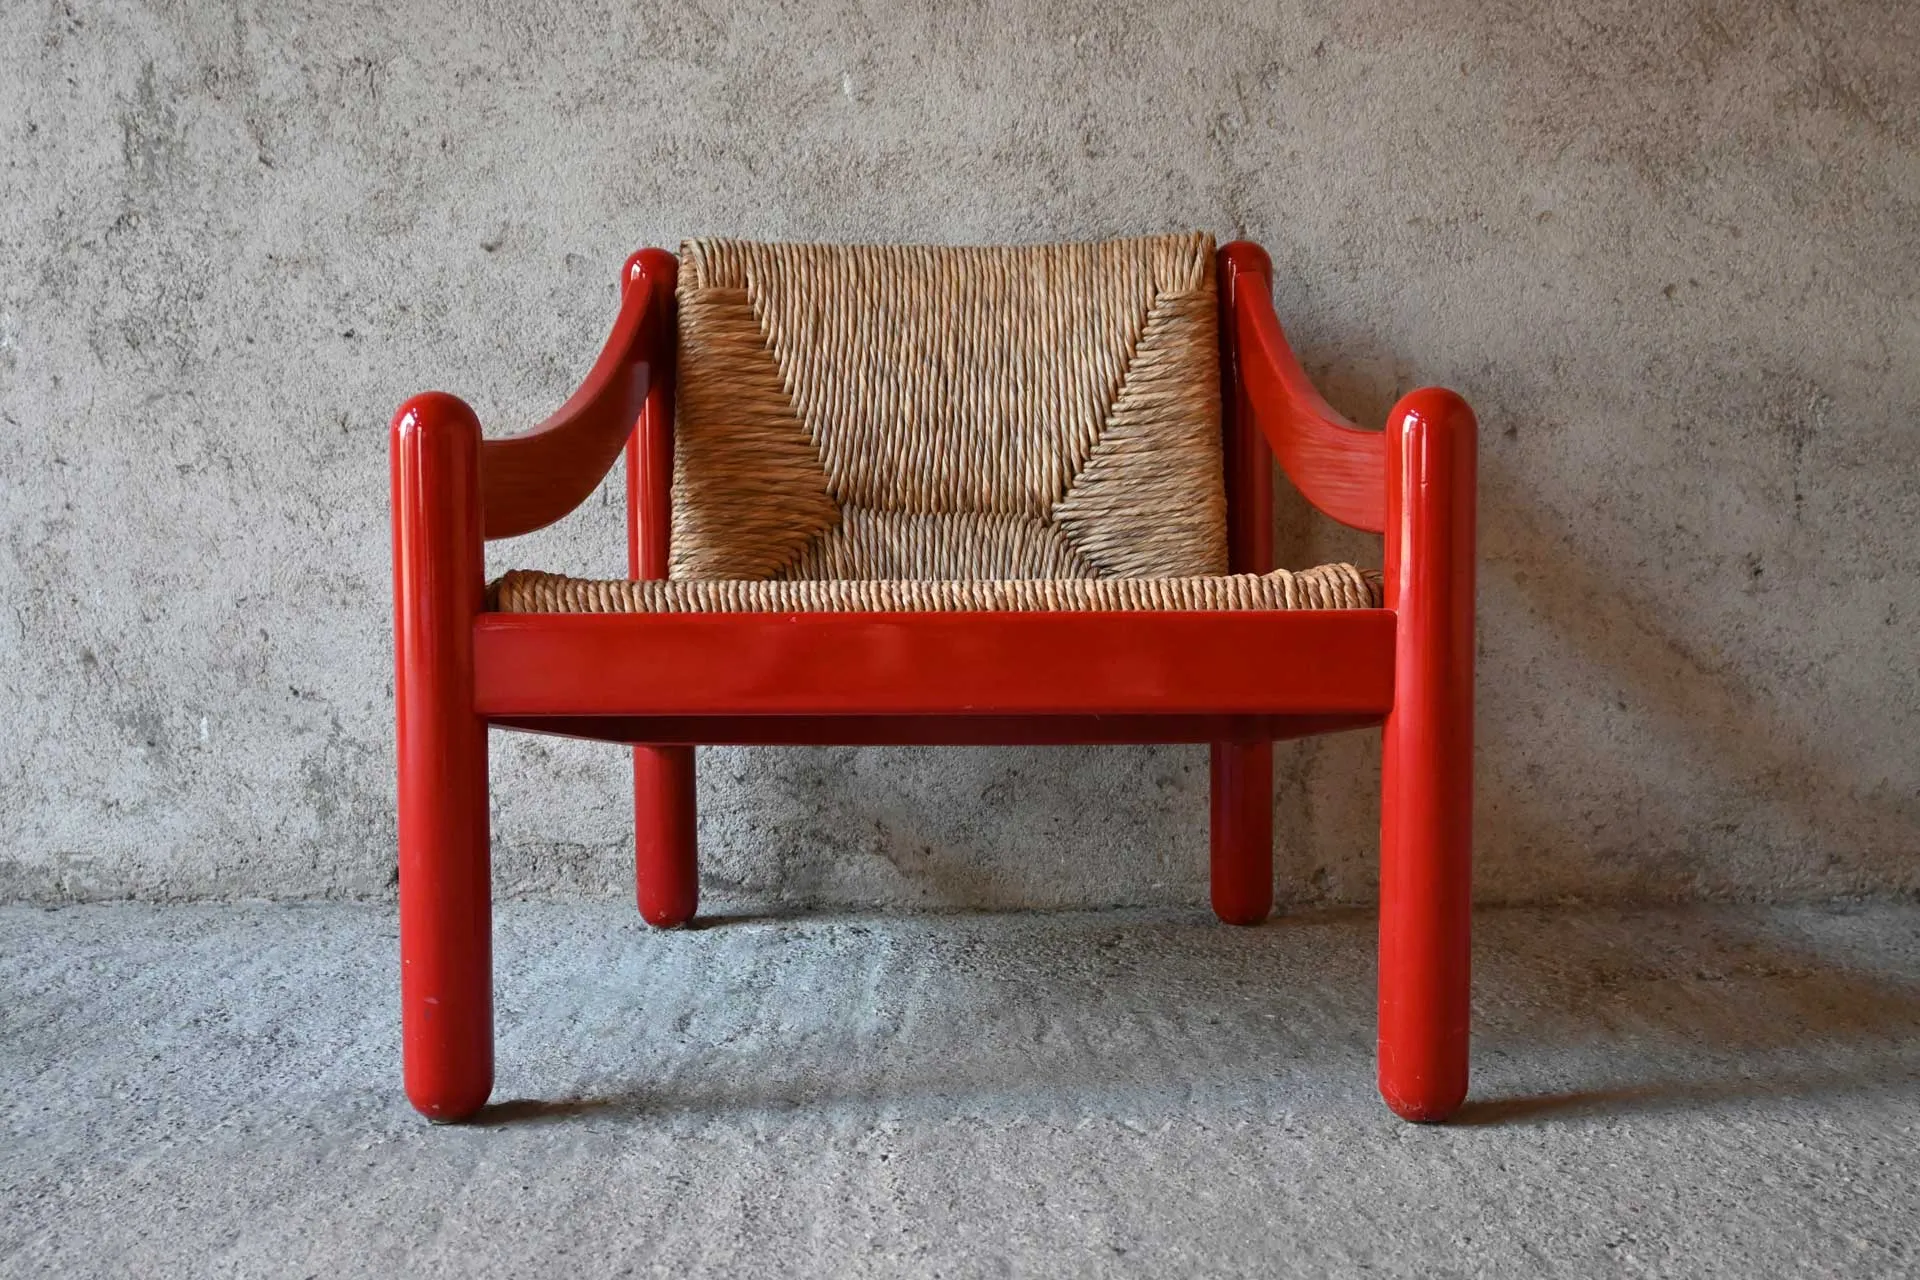 sedia Carimate 1963 prodotta da Cassina su disegno di Vico Magistretti